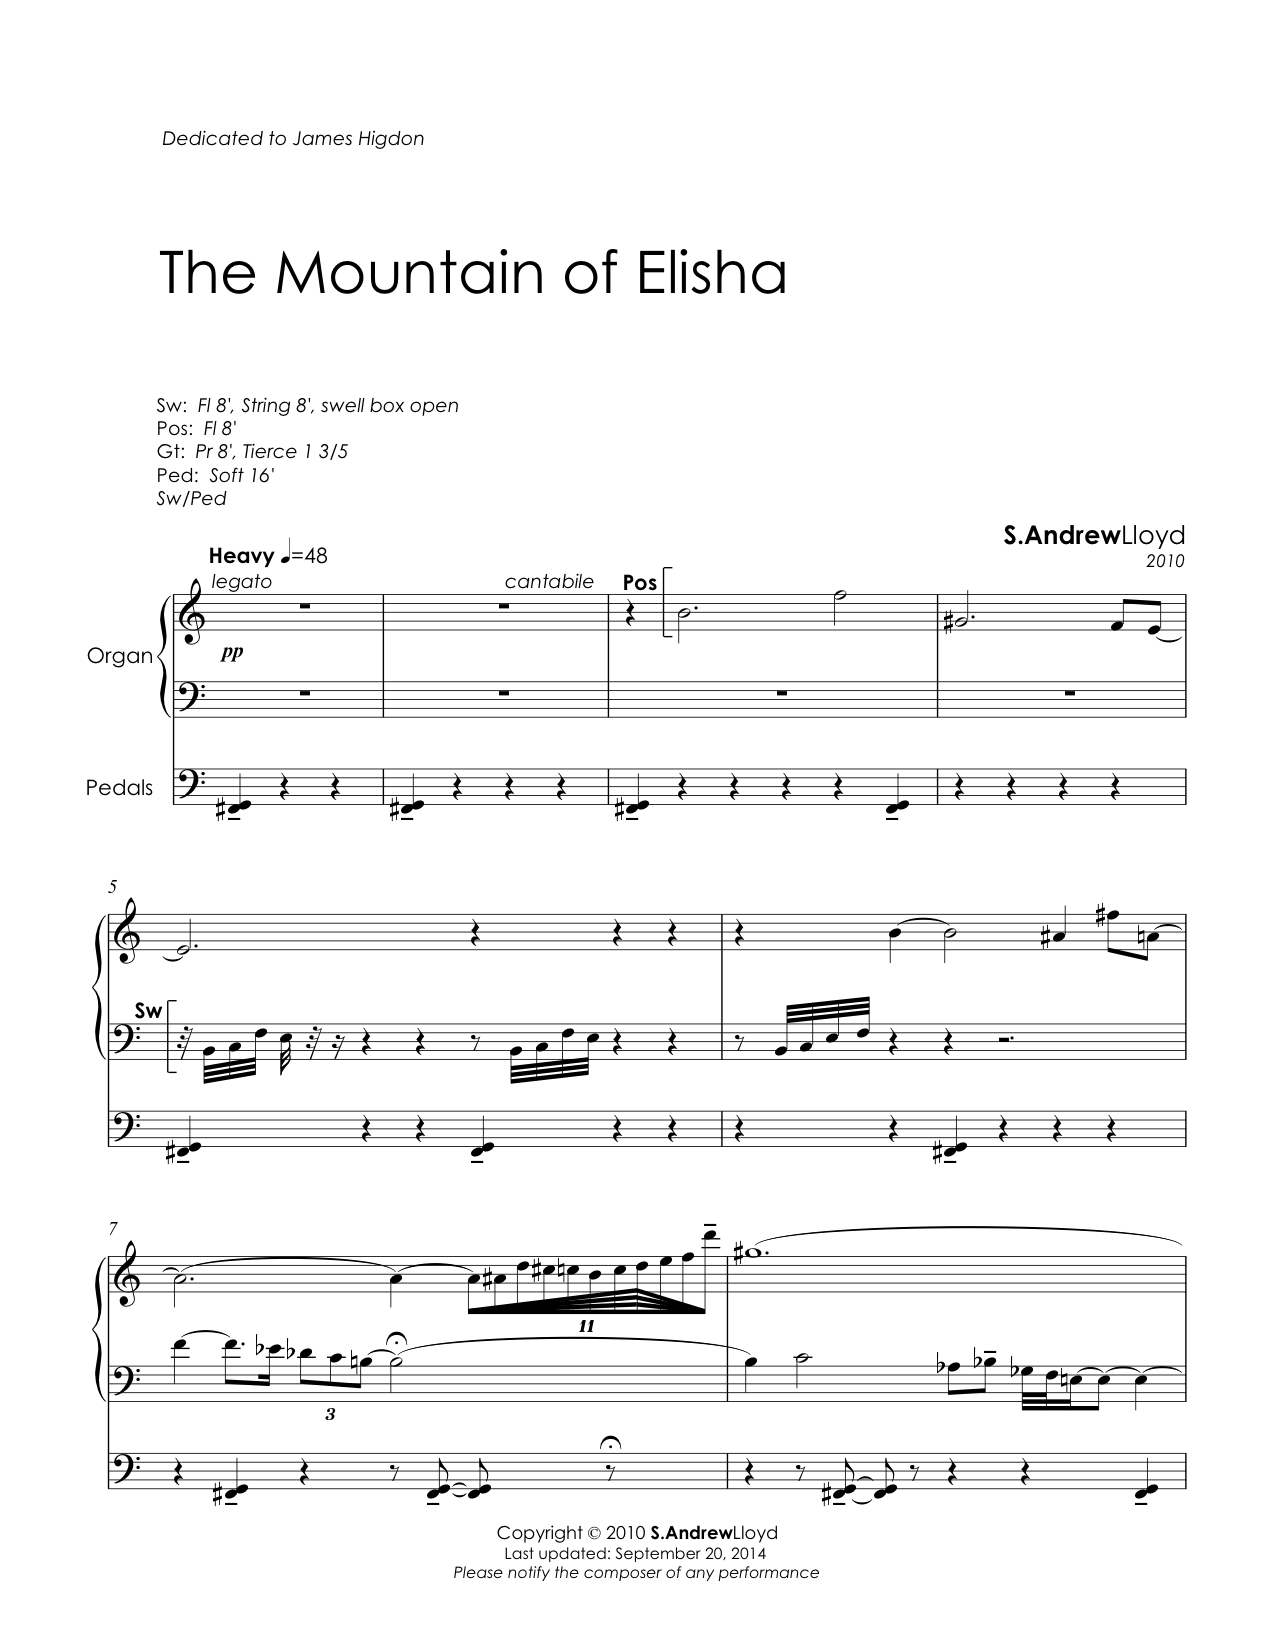 The Mountain of Elisha Sample pg 1.jpg